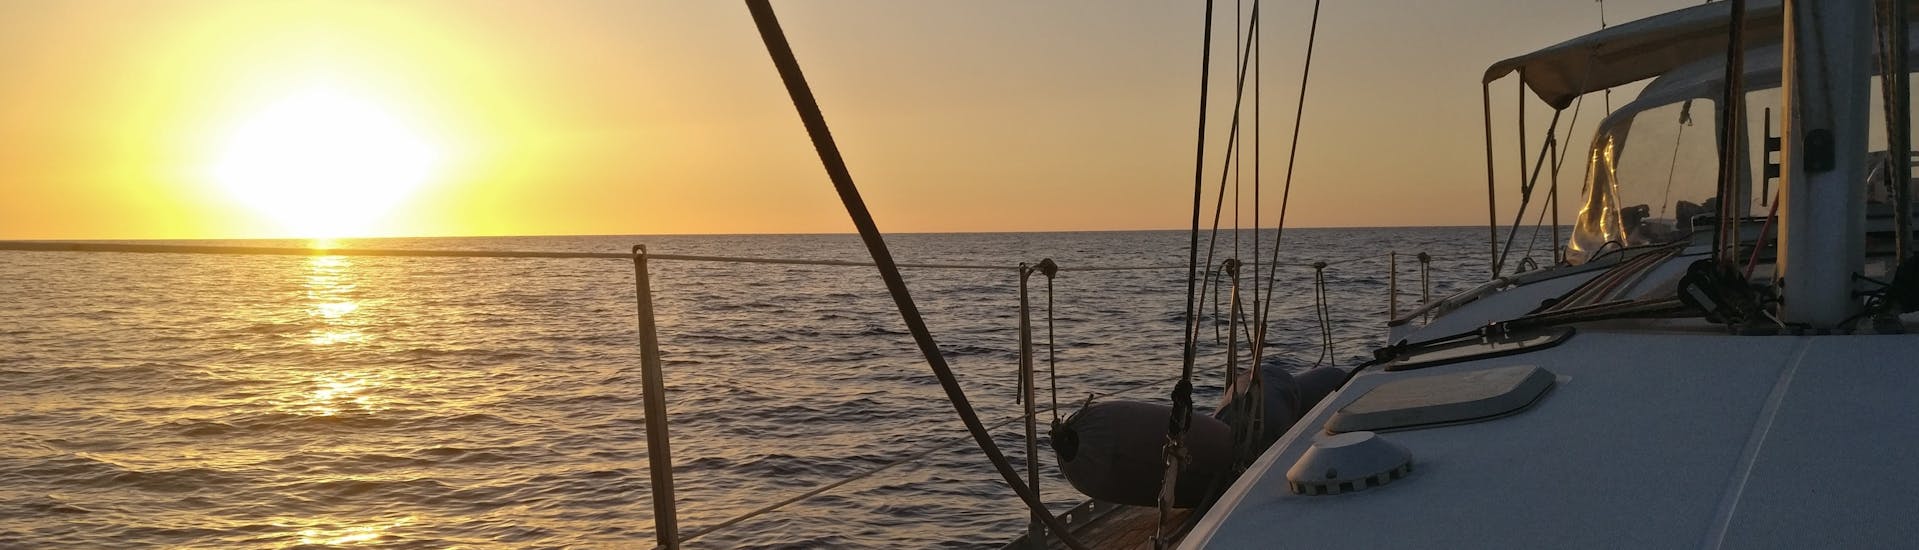 Vistas del mar al atardecer desde un barco de Quarantesimo Parallelo Leuca durante el paseo en velero privado desde Leuca a la costa de Salento.